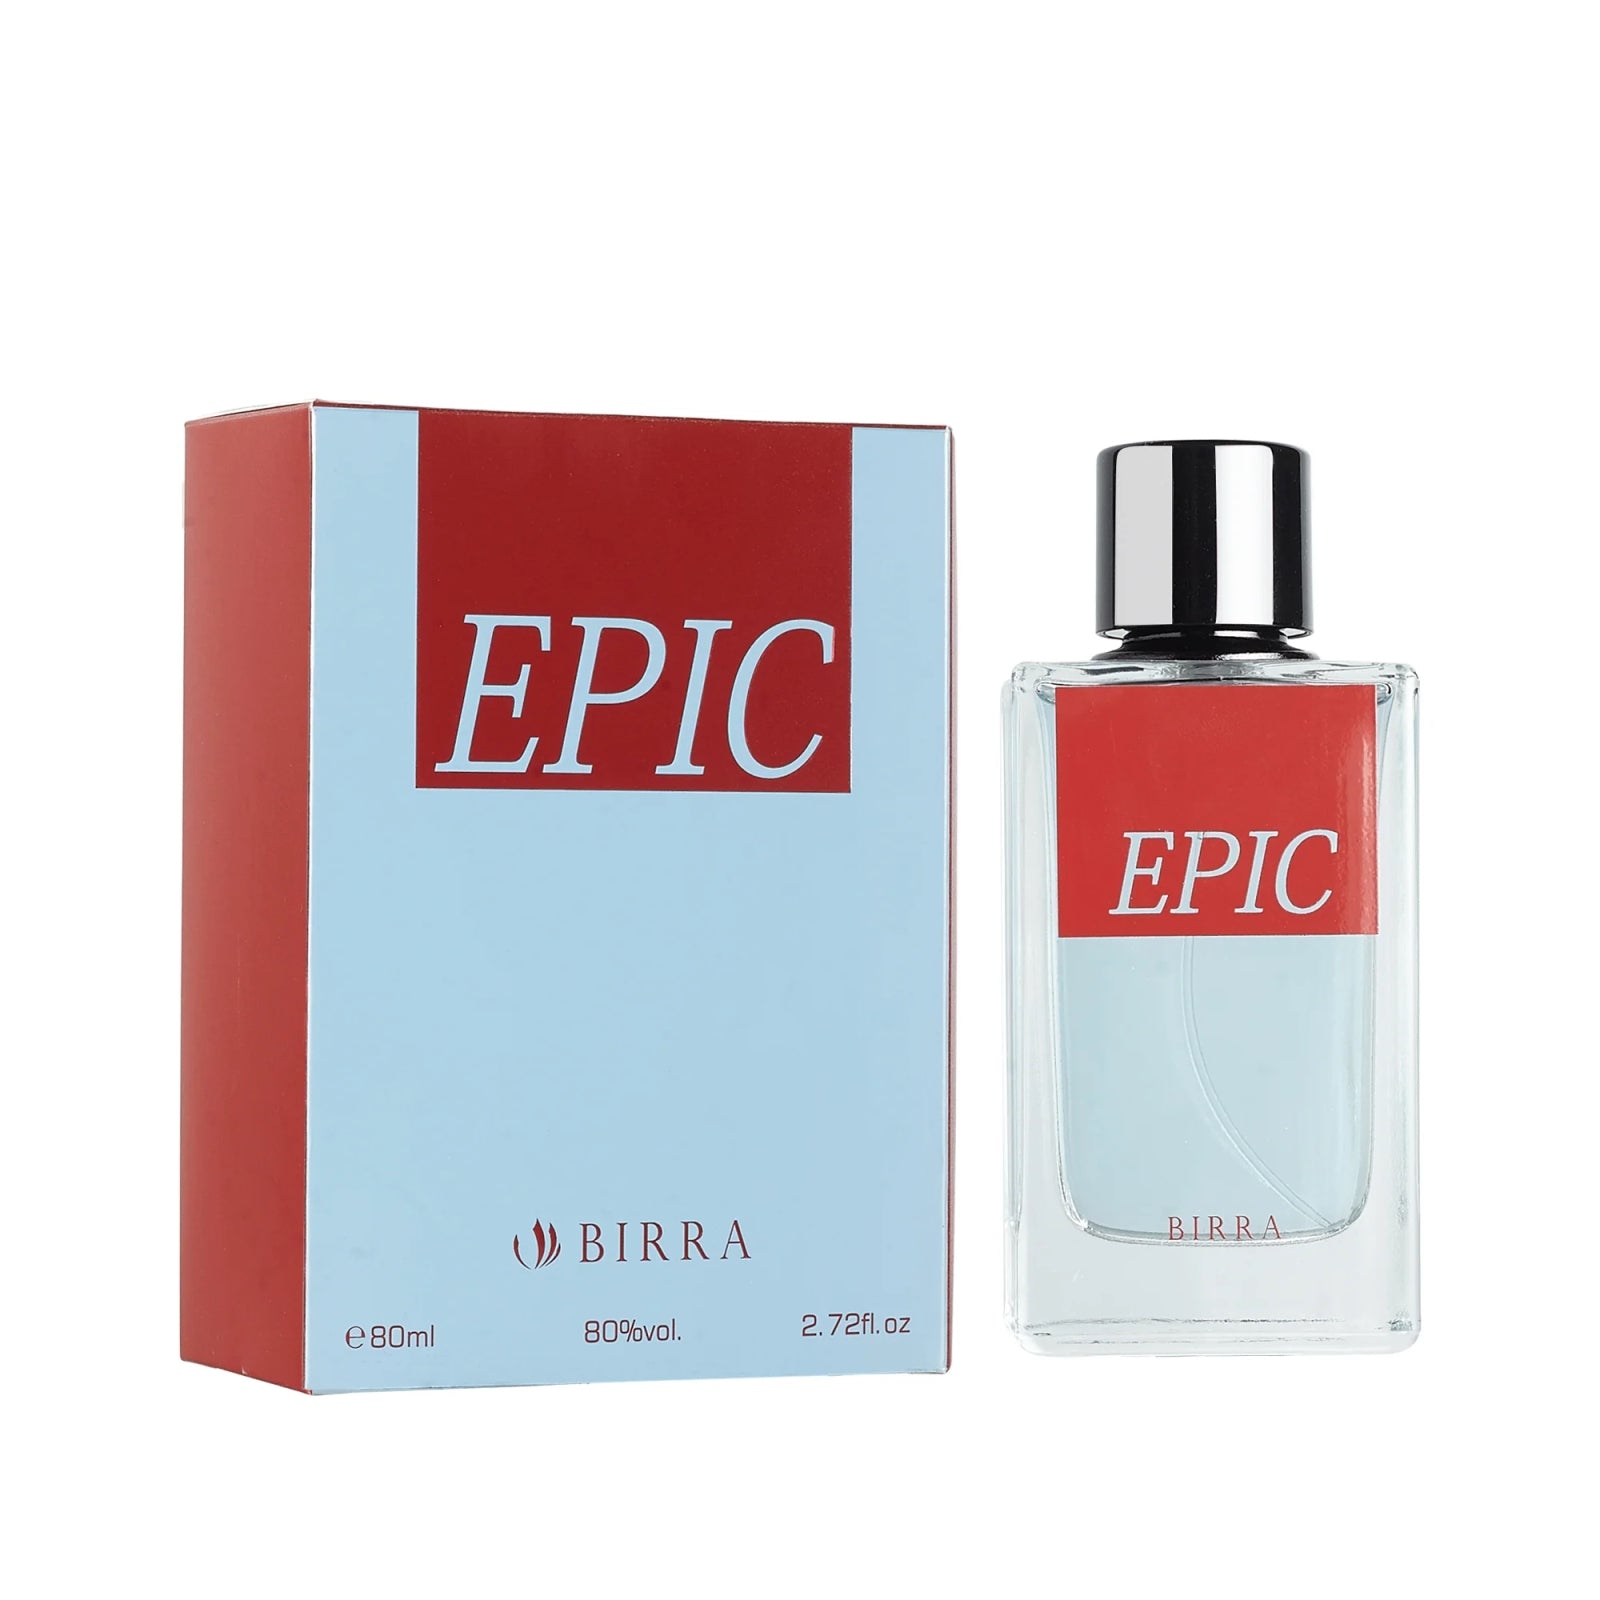 '-Epic-Premium perfume for men